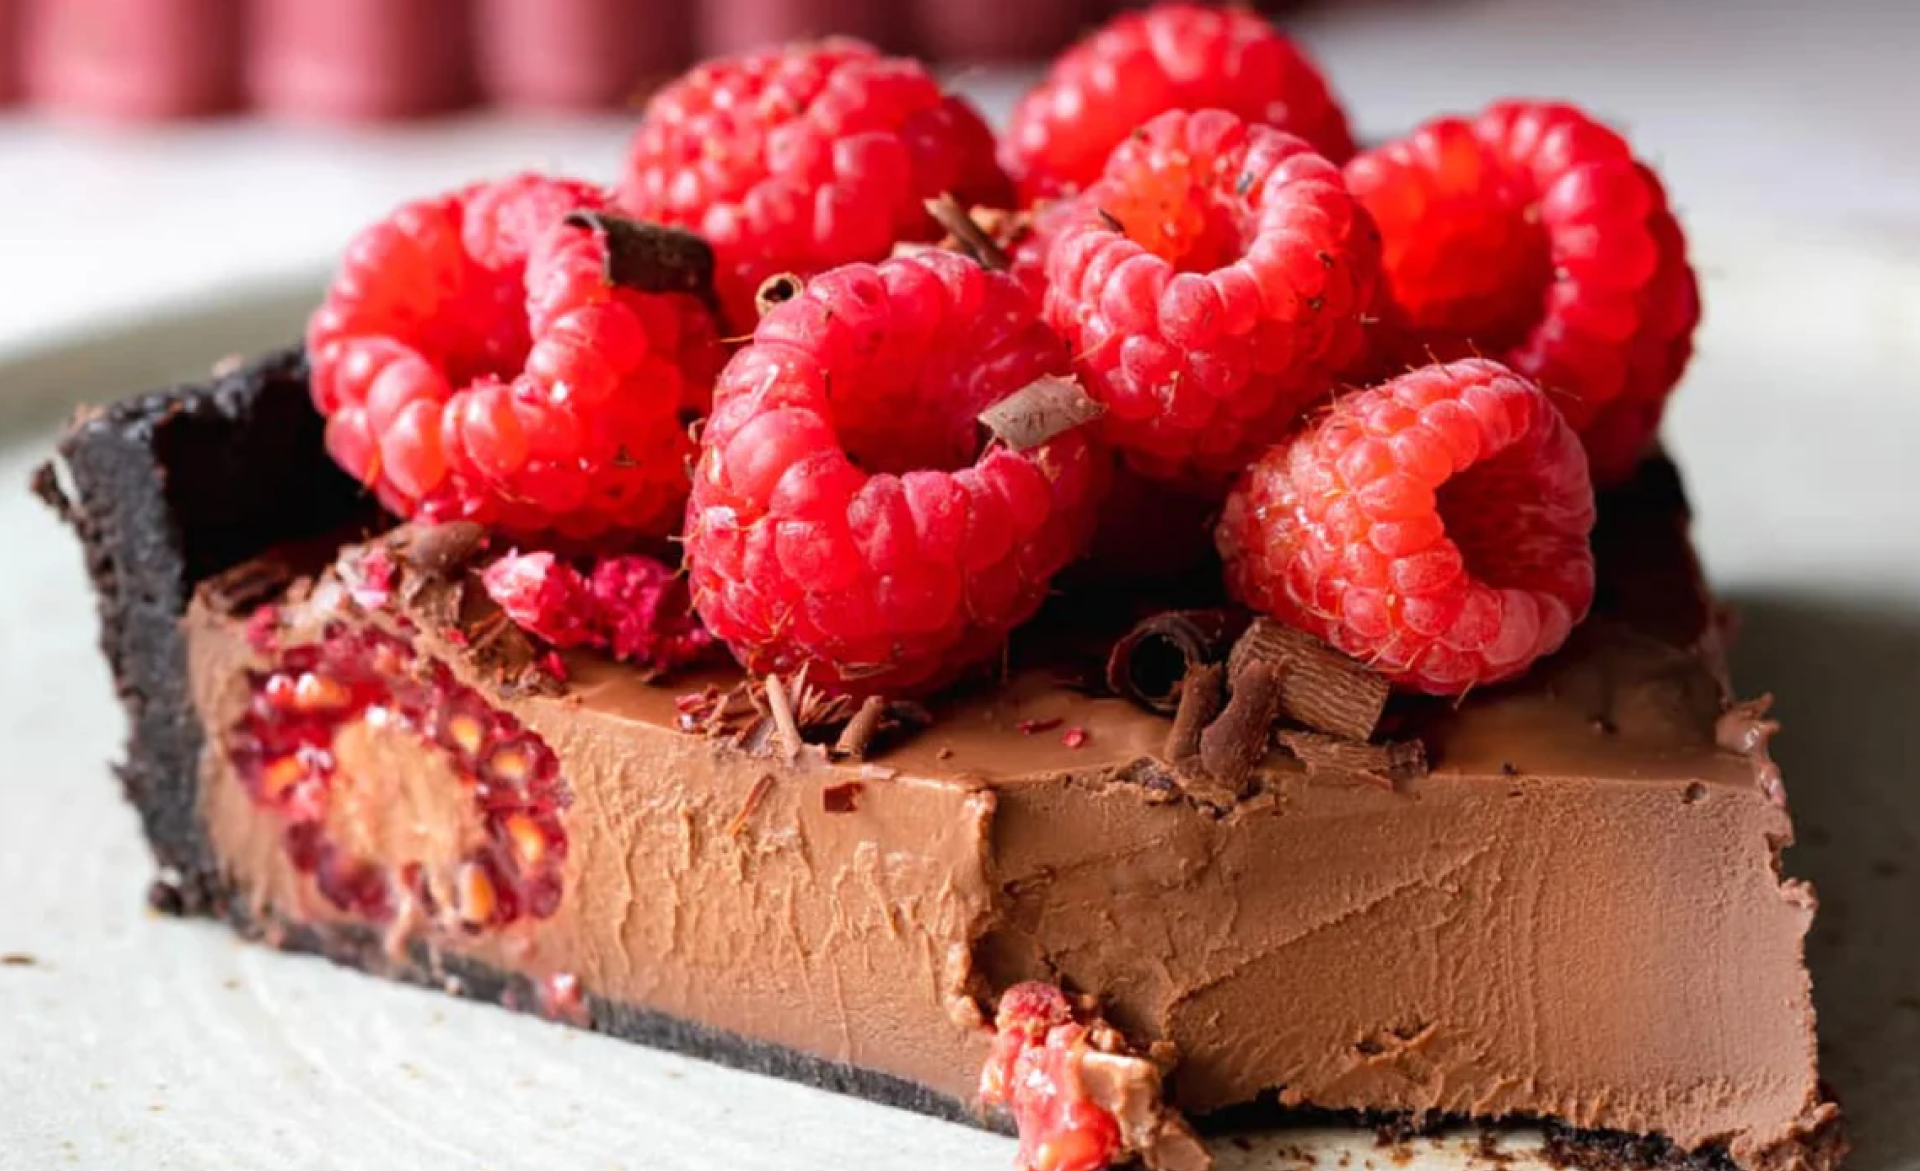 Raspberry Chocolate Tart Recipe